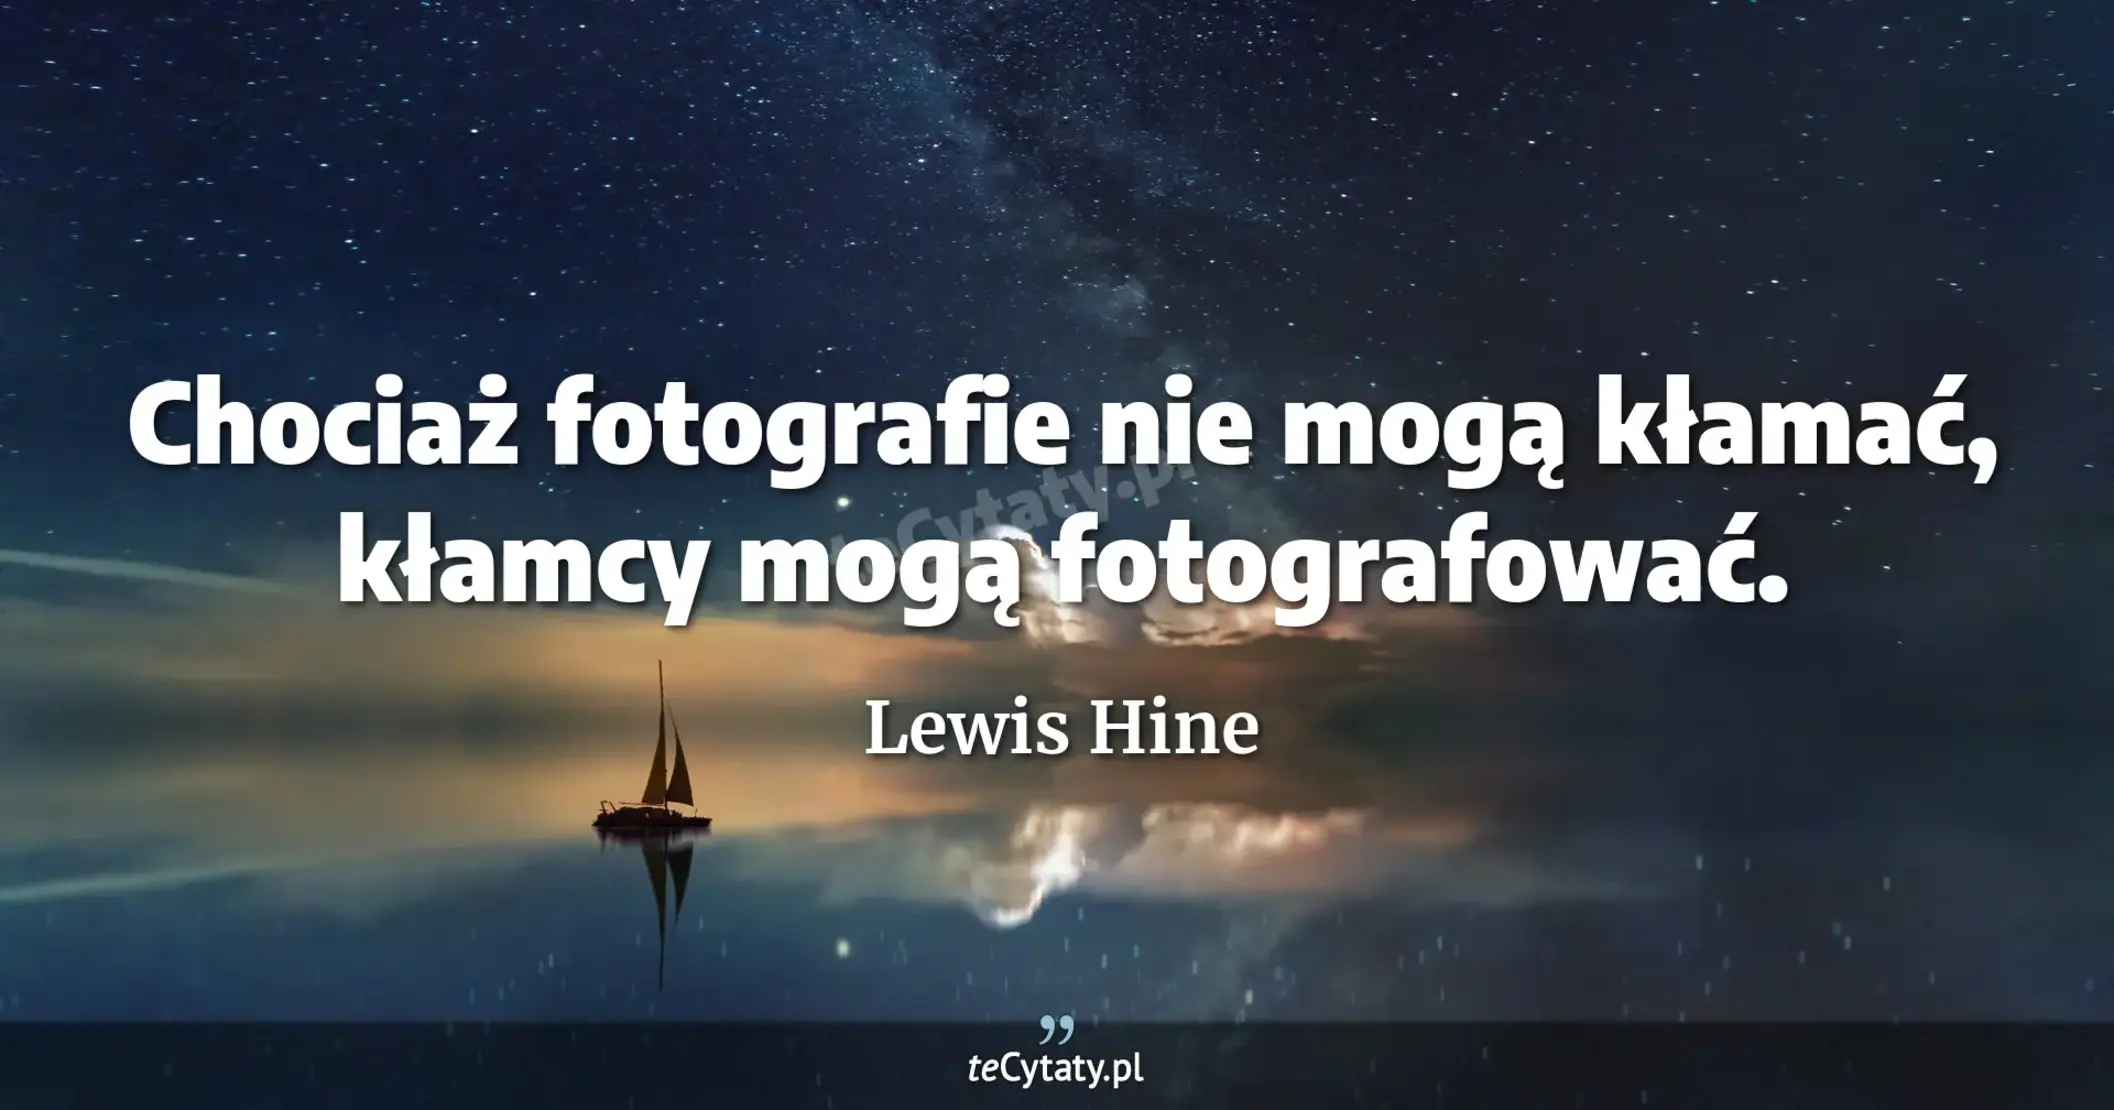 Chociaż fotografie nie mogą kłamać, kłamcy mogą fotografować. - Lewis Hine